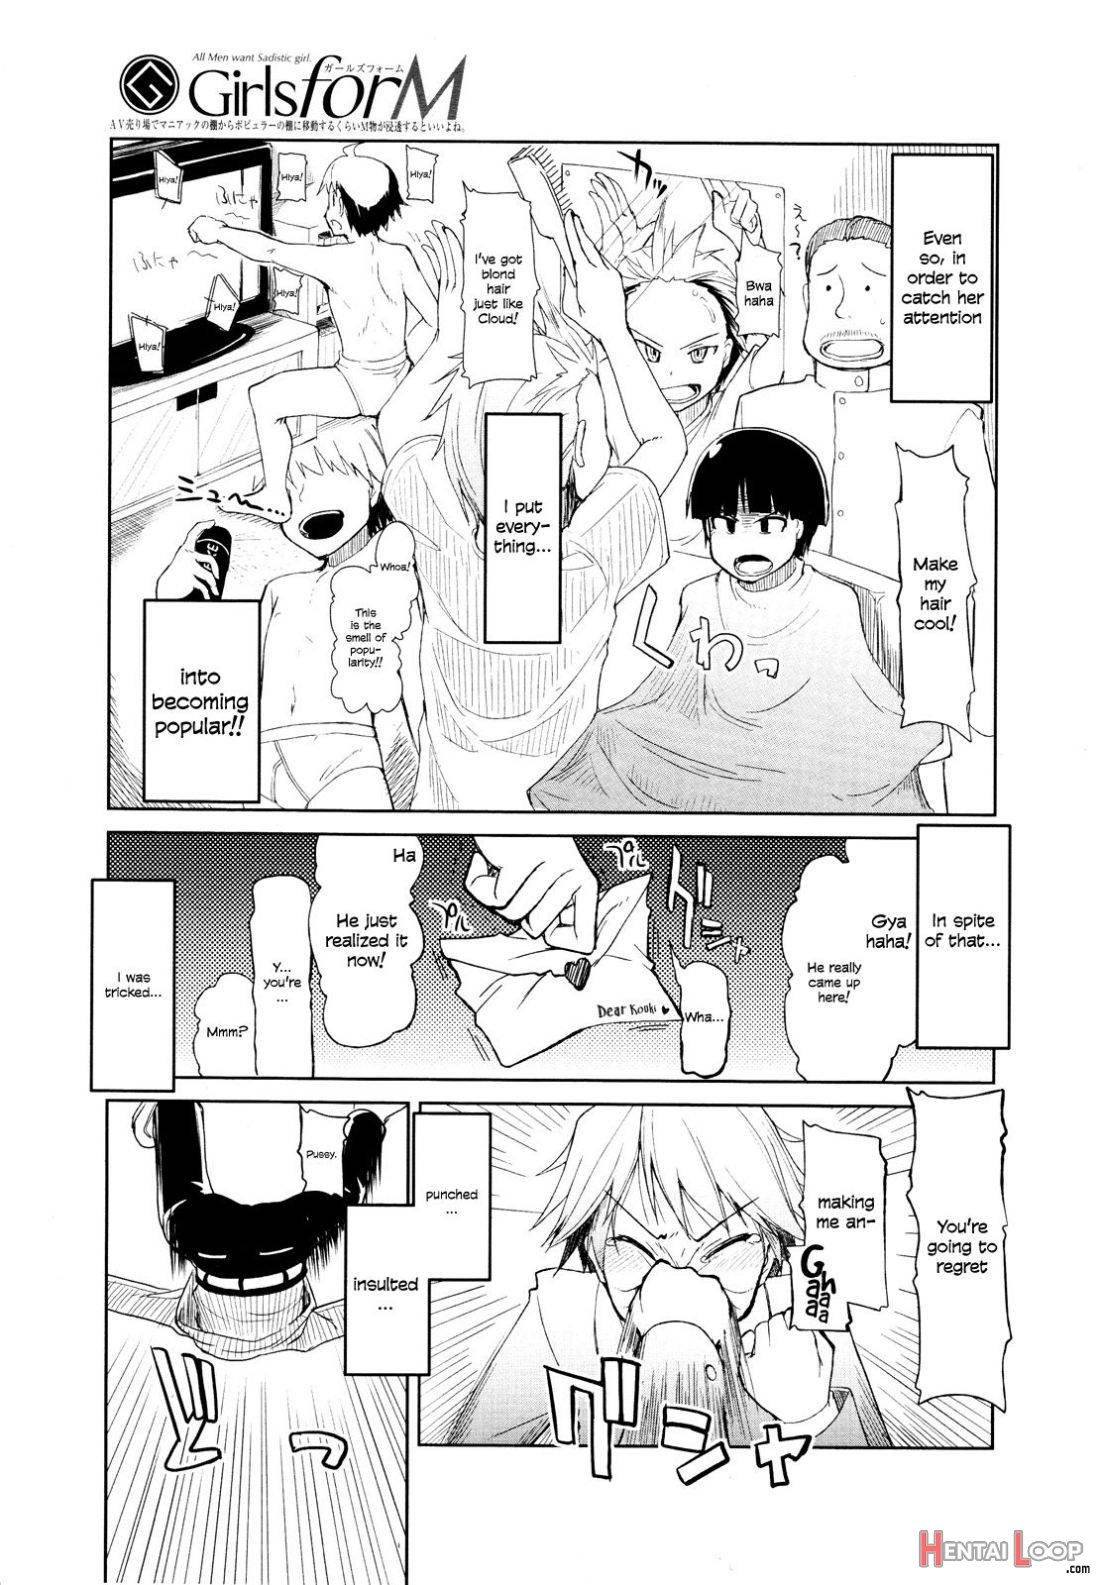 Kouki-kun no Henyou page 3